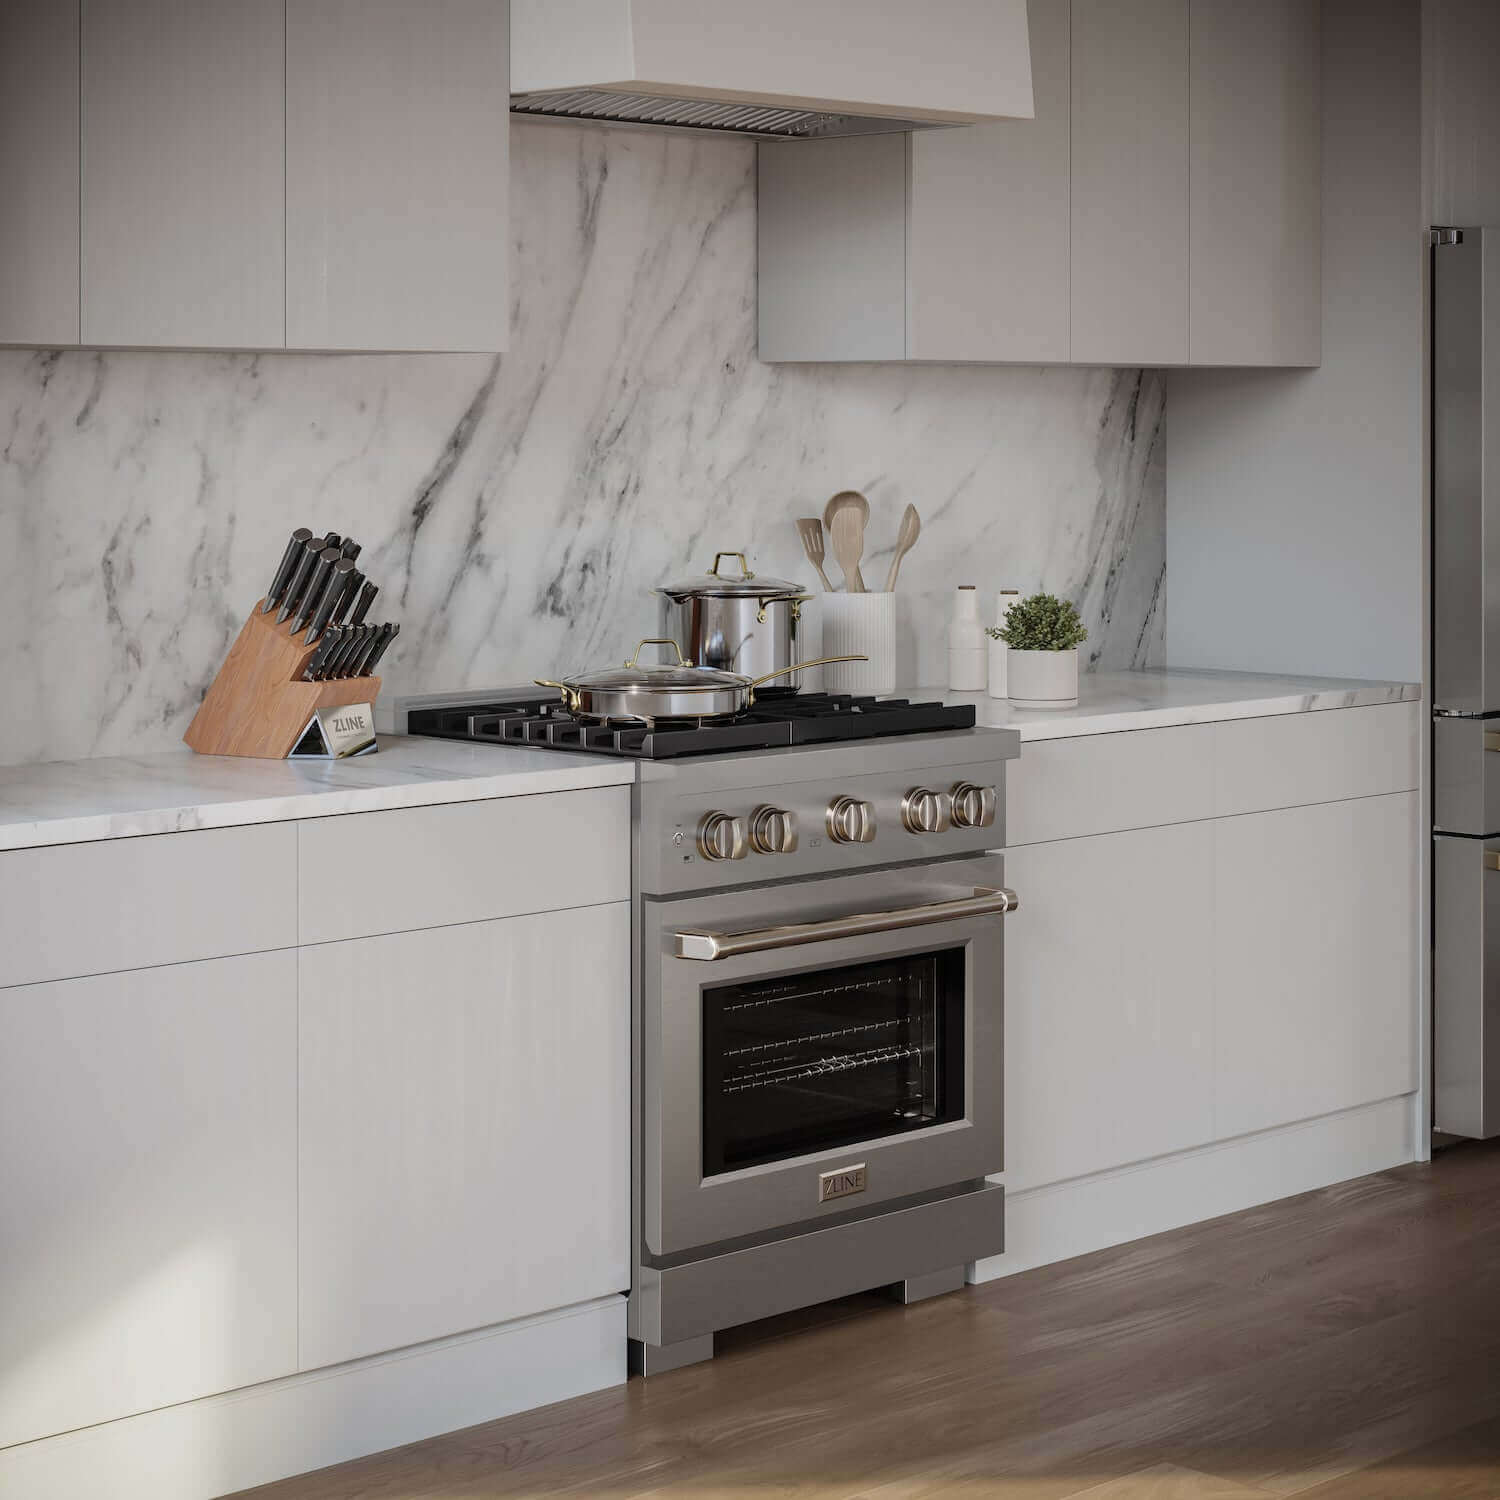 ZLINE 30" Stainless Steel Gas Range side in a  modern luxury kitchen.